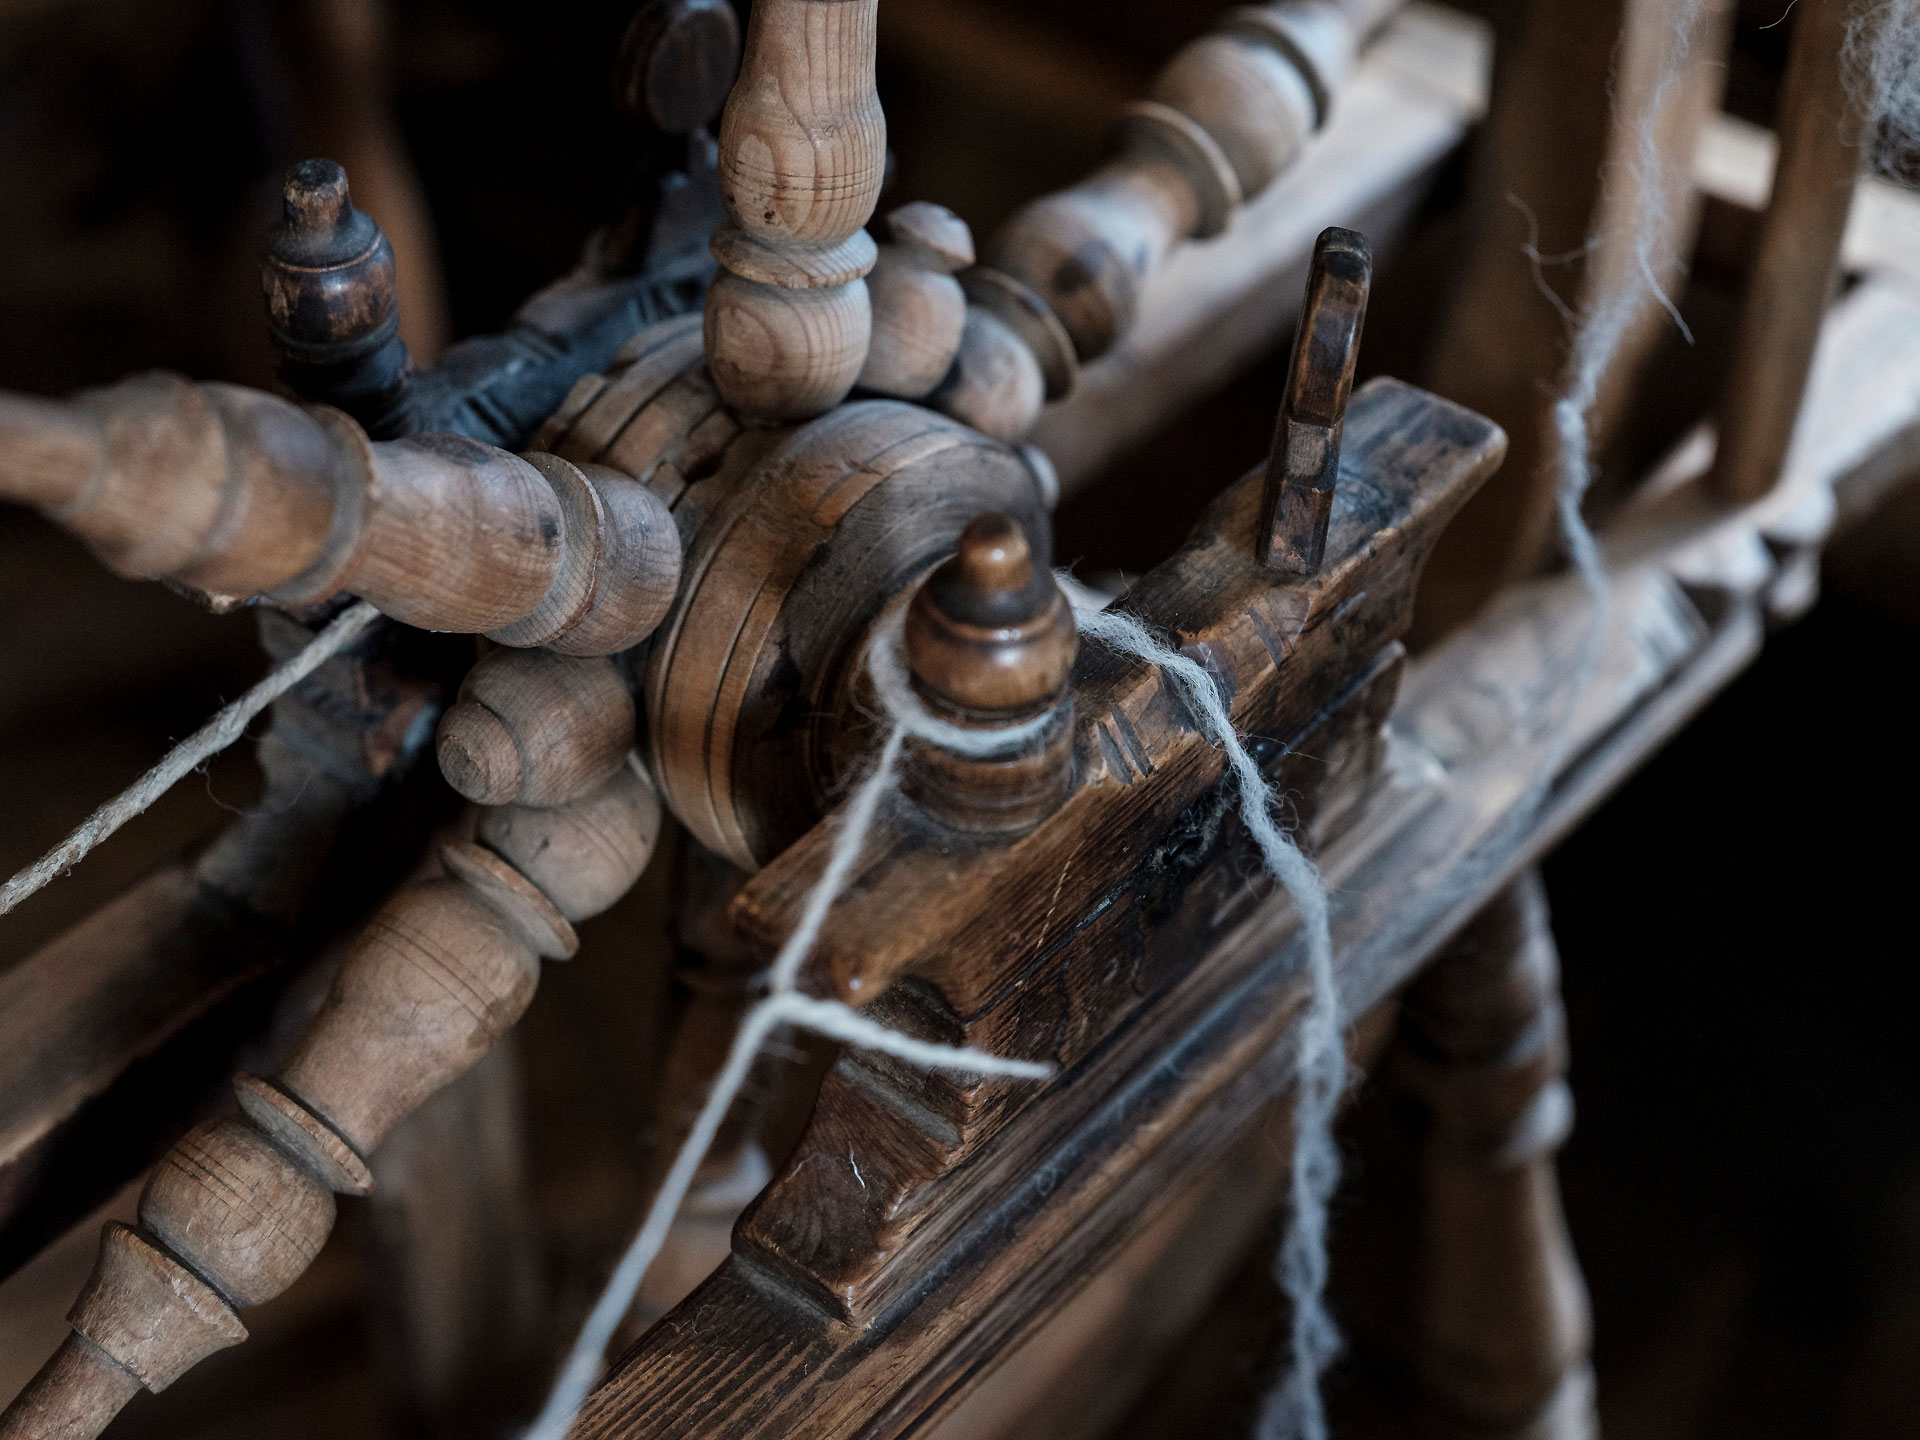 Dettaglio della ruota del filatoio a pedale, usato ancora oggi per filare la lana locale.